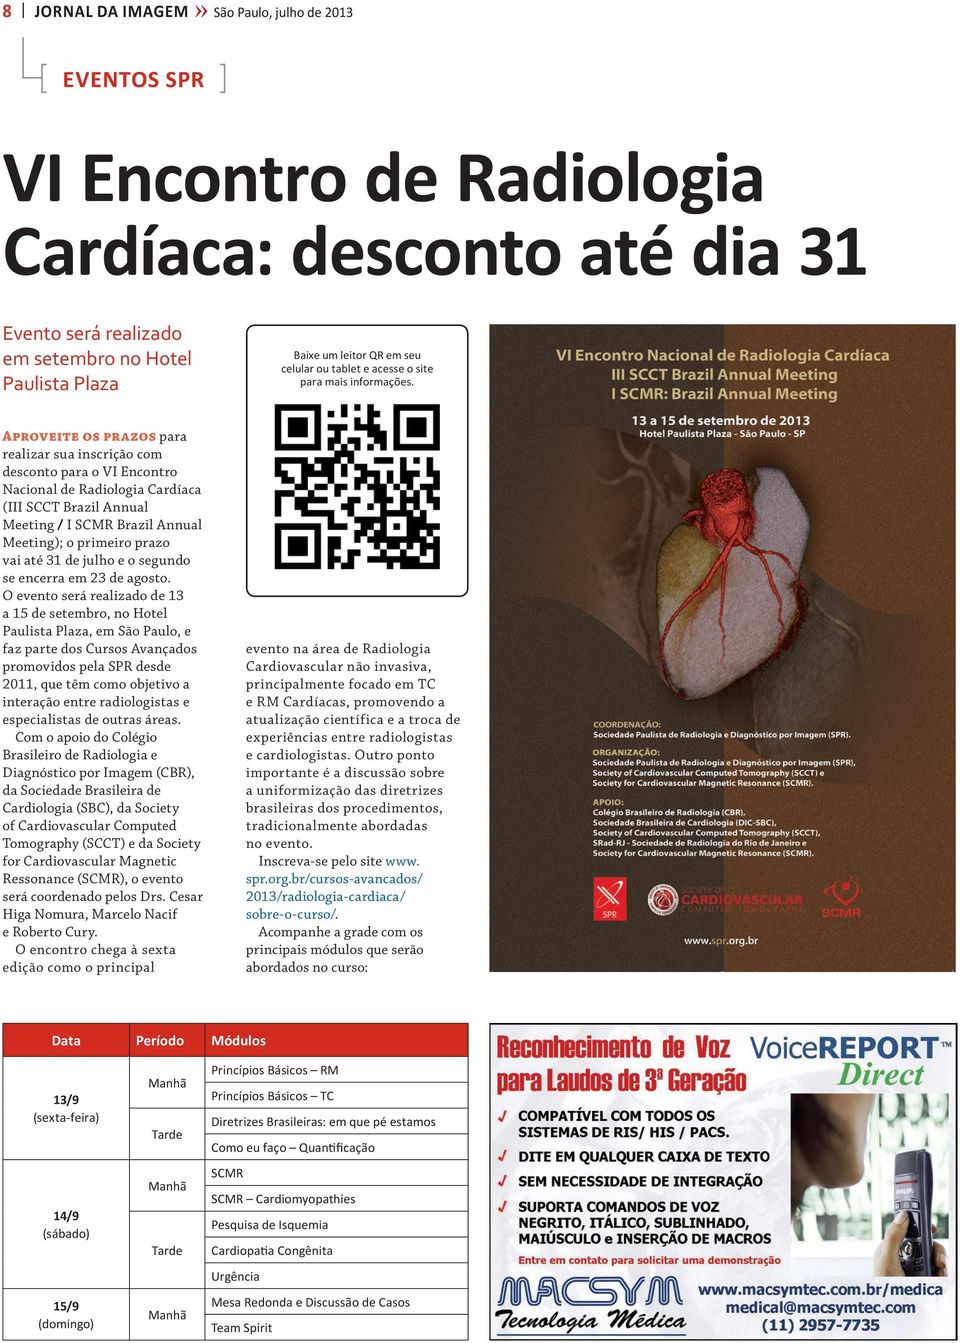 Aproveite os prazos para realizar sua inscrição com desconto para o VI Encontro Nacional de Radiologia Cardíaca (III SCCT Brazil Annual Meeting / I SCMR Brazil Annual Meeting); o primeiro prazo vai